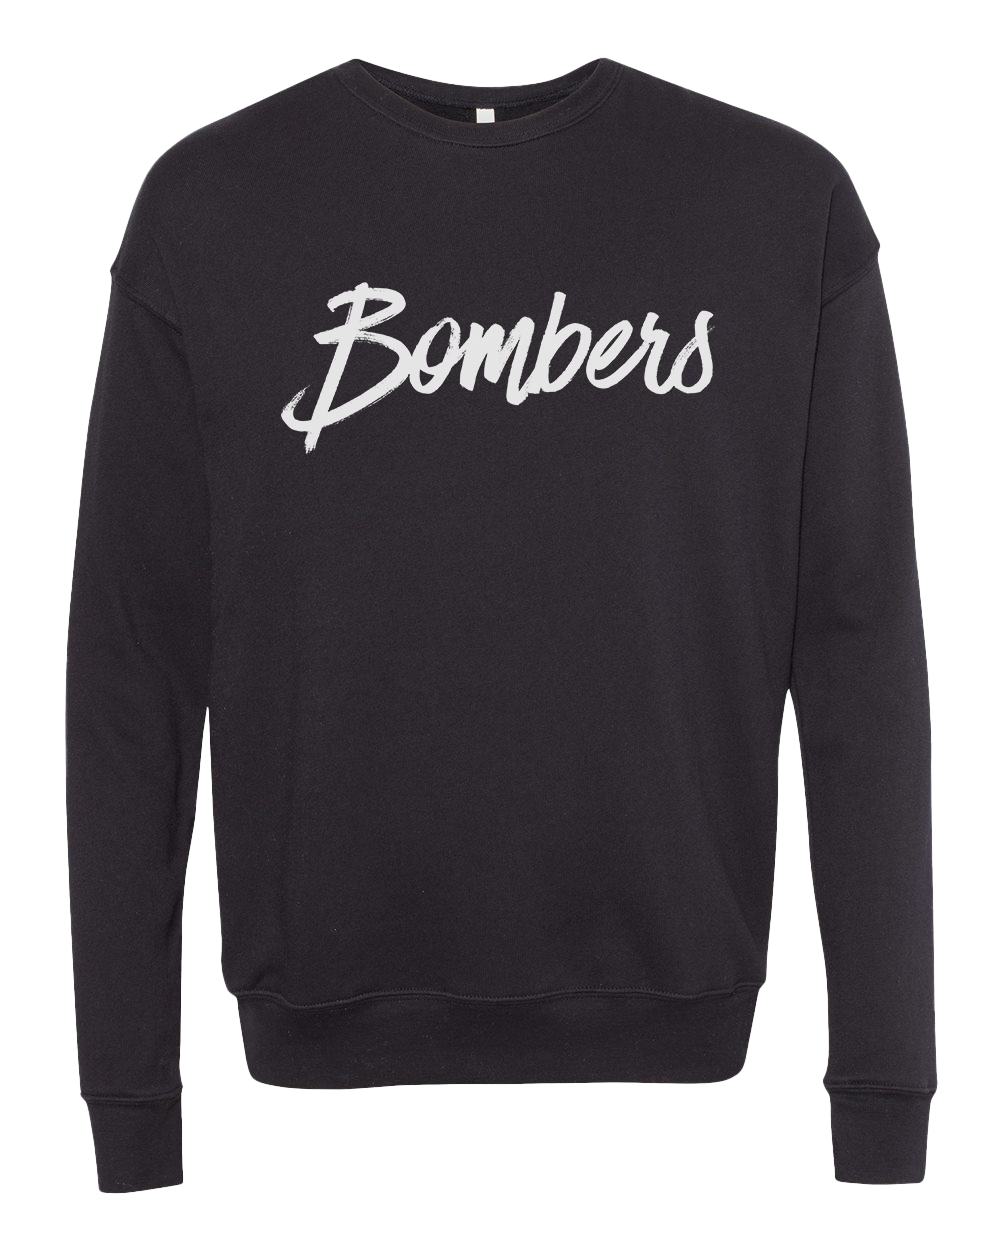 Rensselaer Central Bombers Simple Crew Sweatshirt - Black